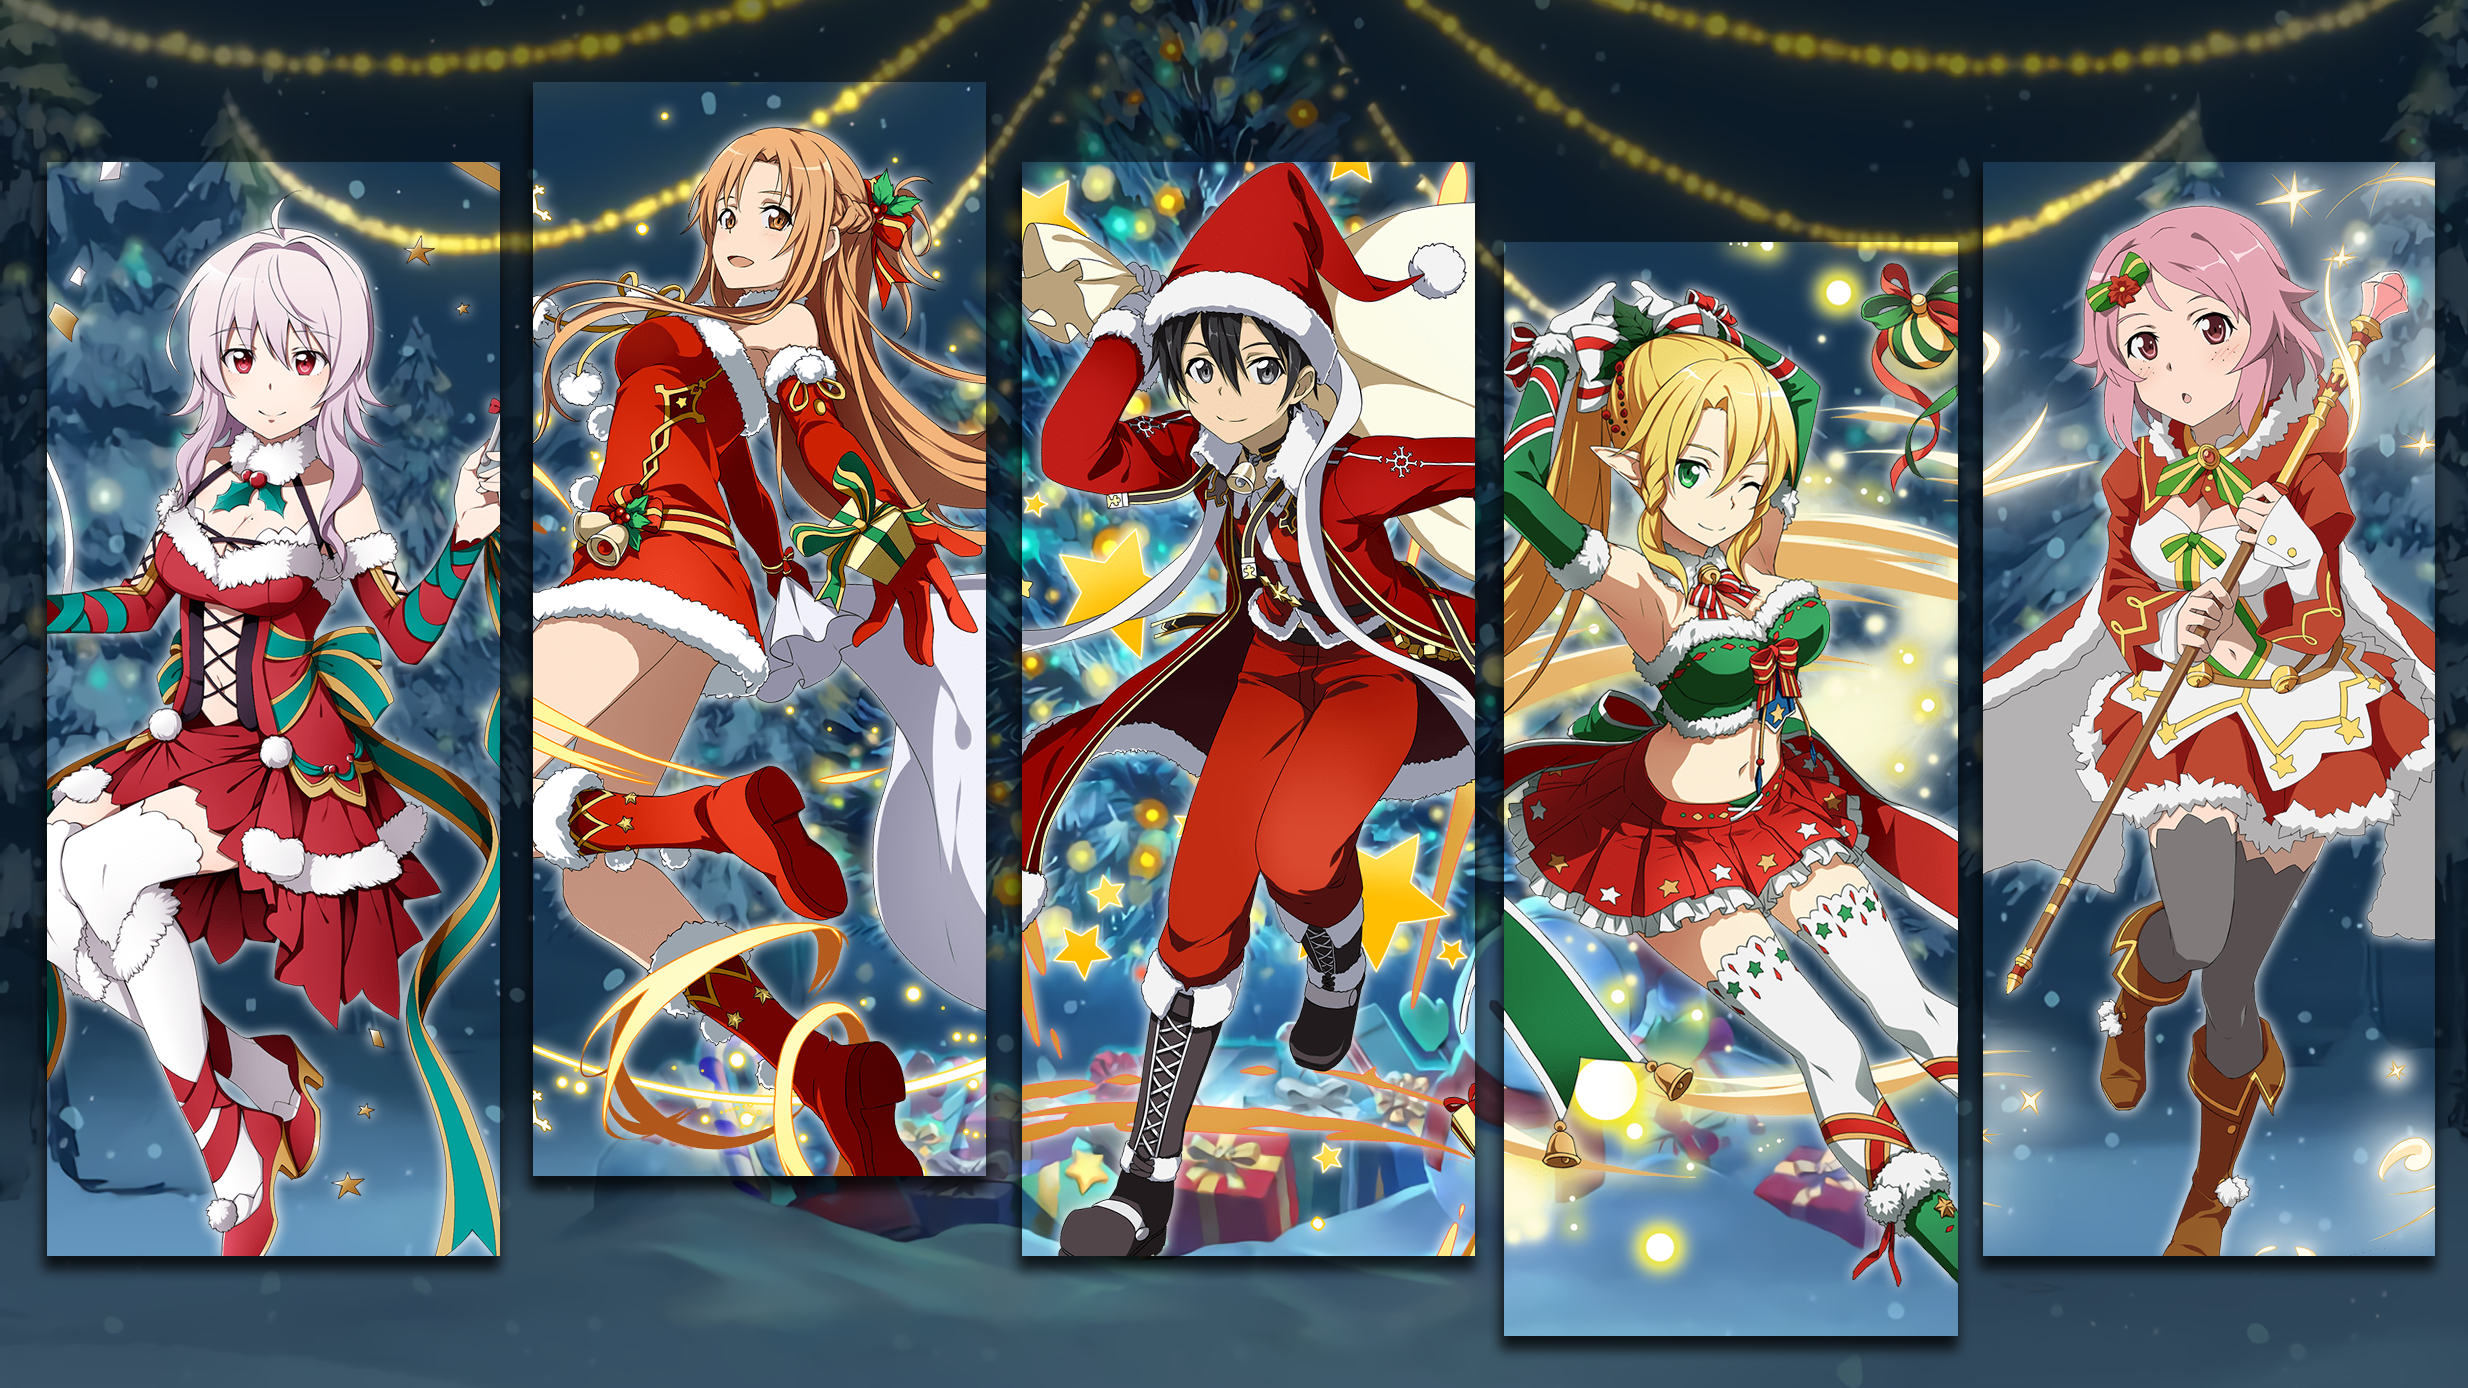 29+] Sao Anime Christmas Wallpapers - WallpaperSafari